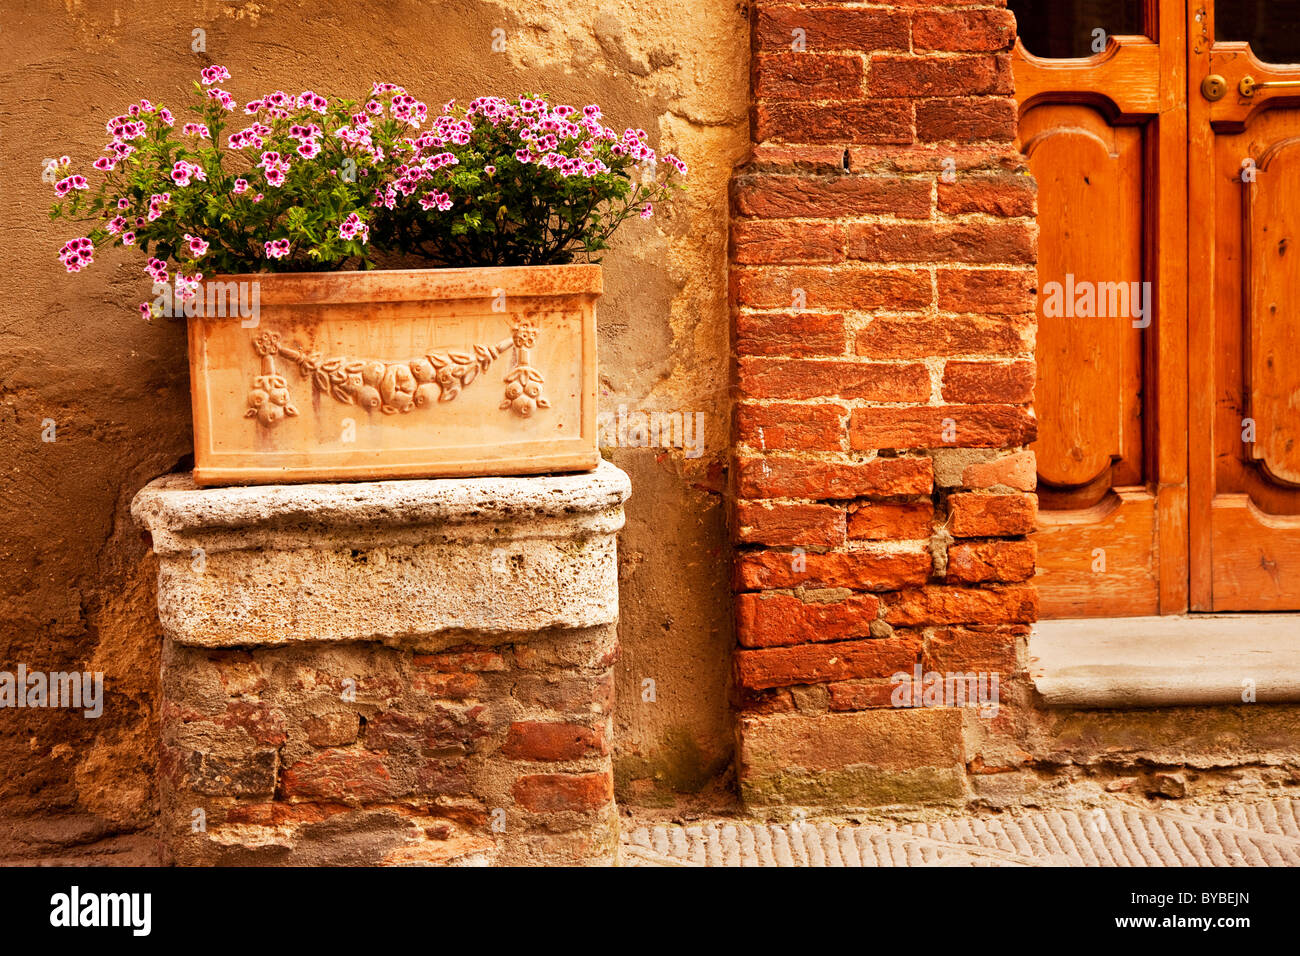 Boîte à fleurs en bois à côté de la porte avant pour la Maison dans village médiéval de Castelmuzio près de Montisi, Toscane Italie Banque D'Images